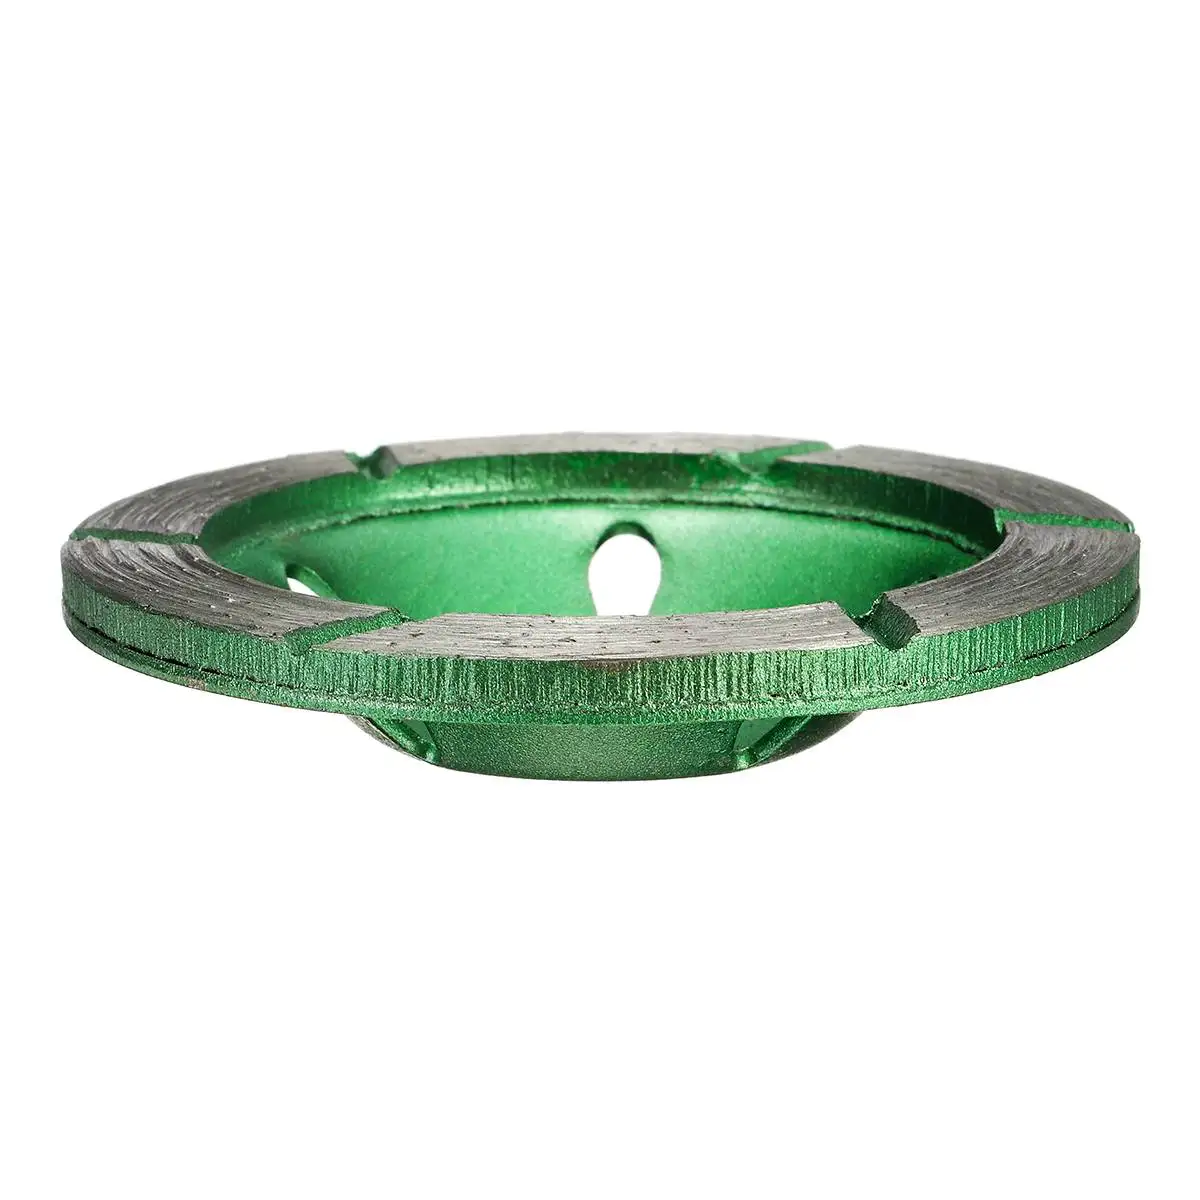 80 мм/3,15 дюйма HHS Сегмент алмазный шлифовальный круг диск чашка шлифовальный станок бетон гранит камень резак